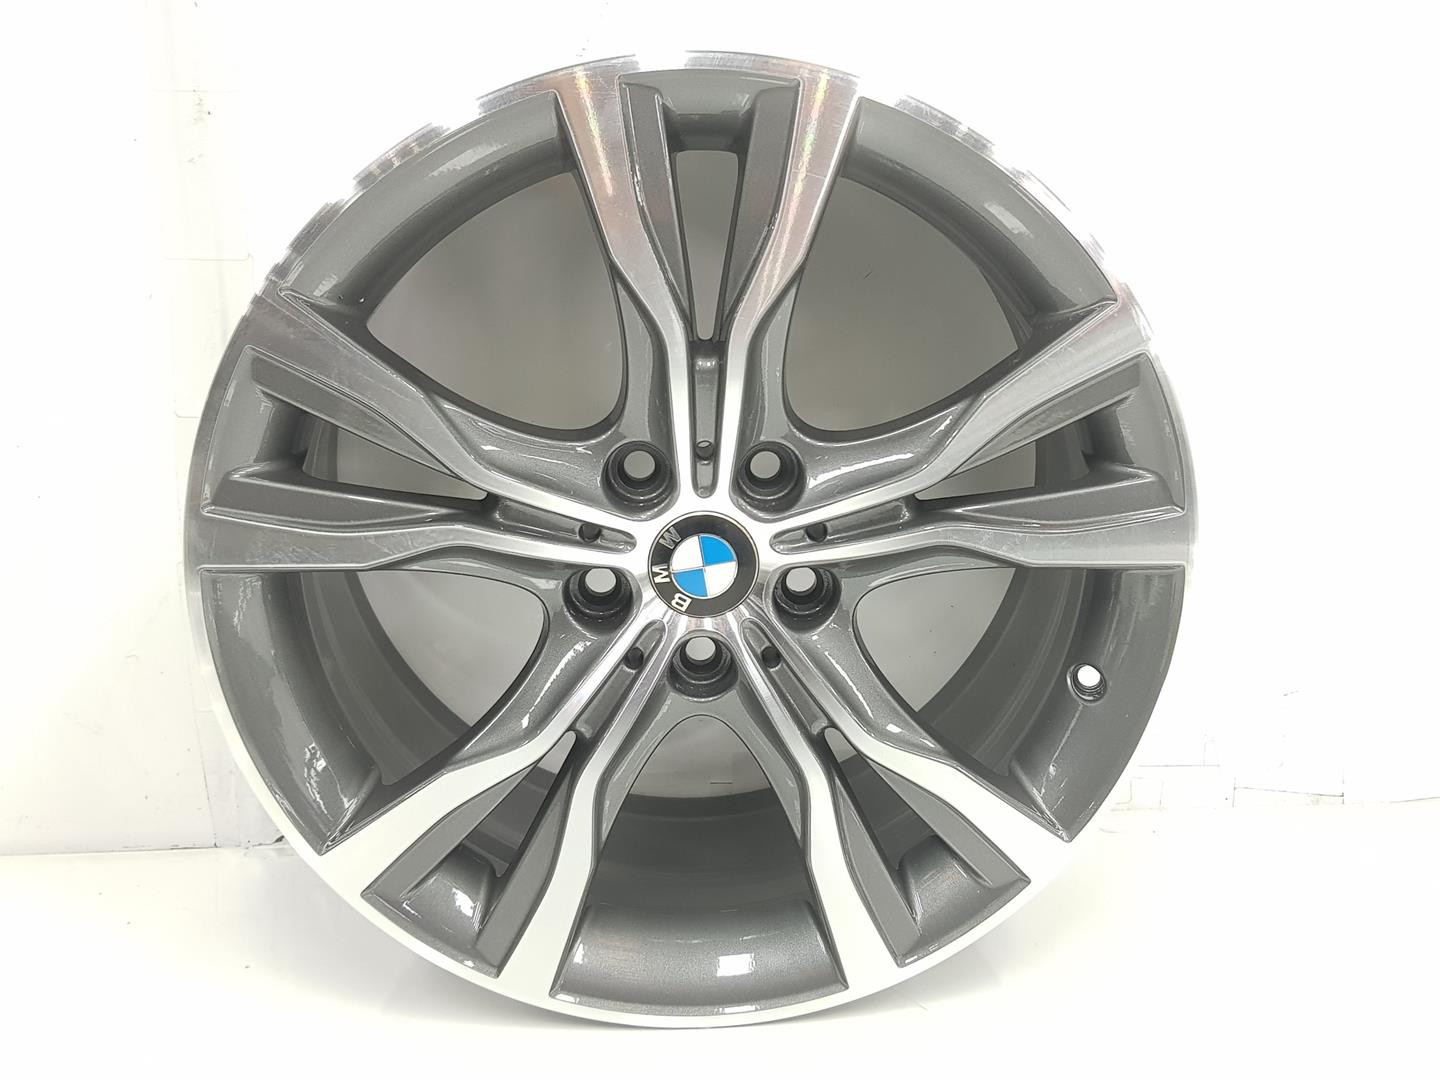 BMW 2 Series Active Tourer F45 (2014-2018) Wheel 6855093, 8JX18, 18PULGADAS 24251030